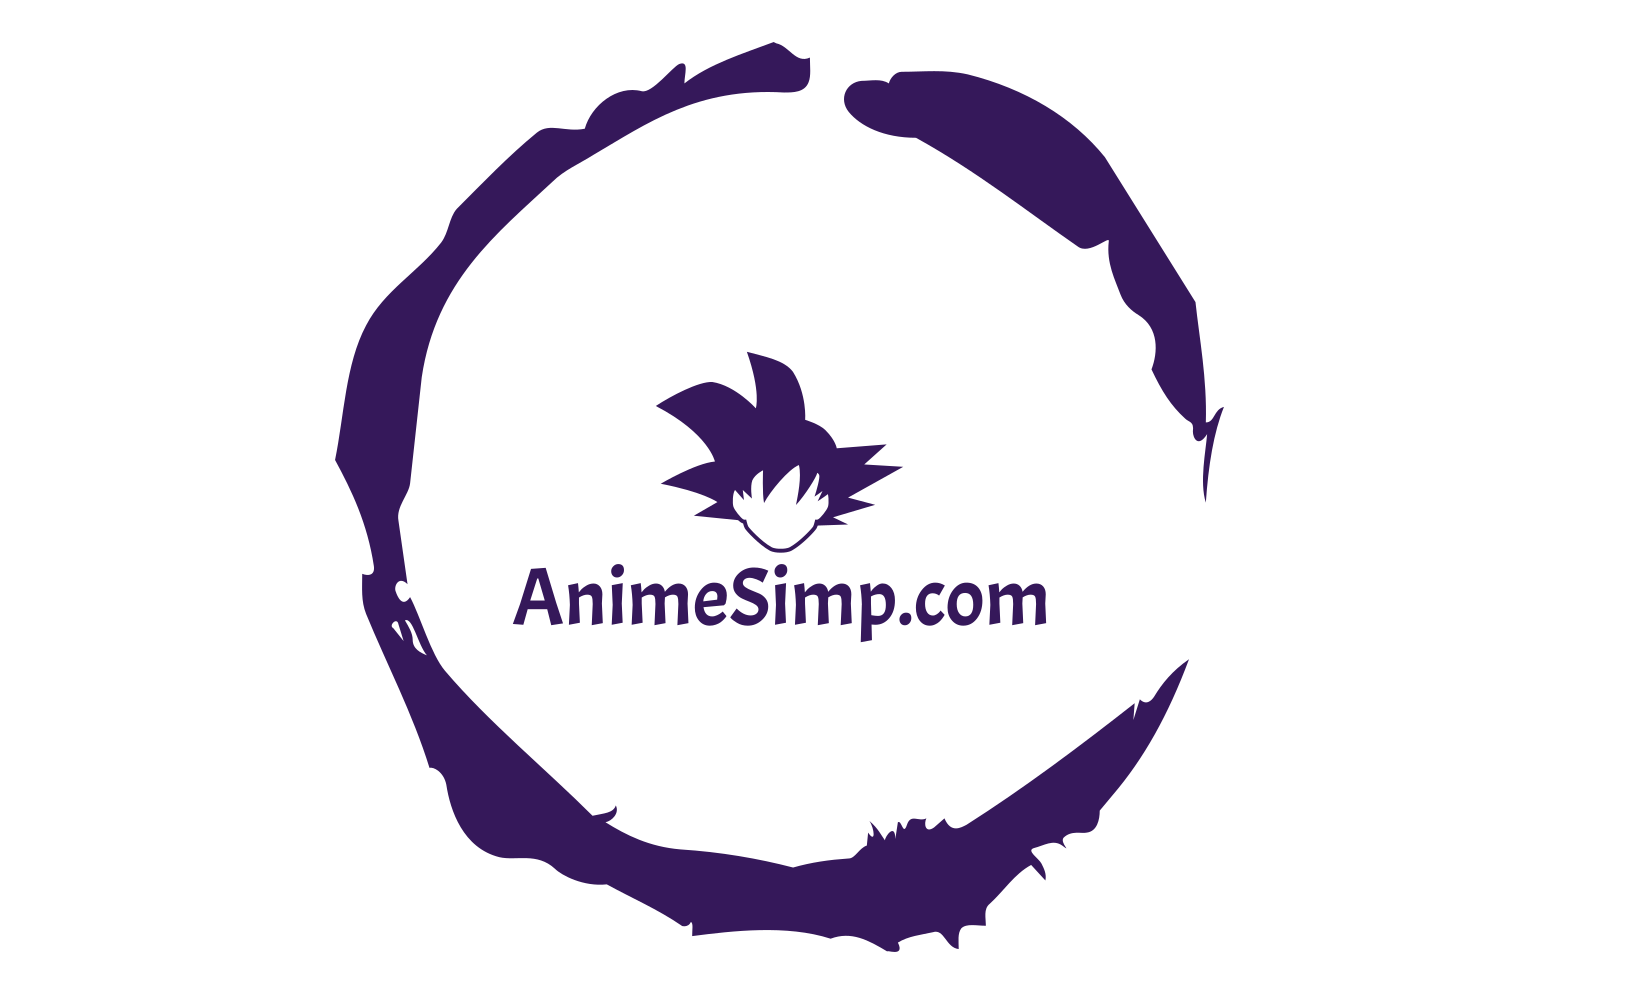 AnimeSimp.com